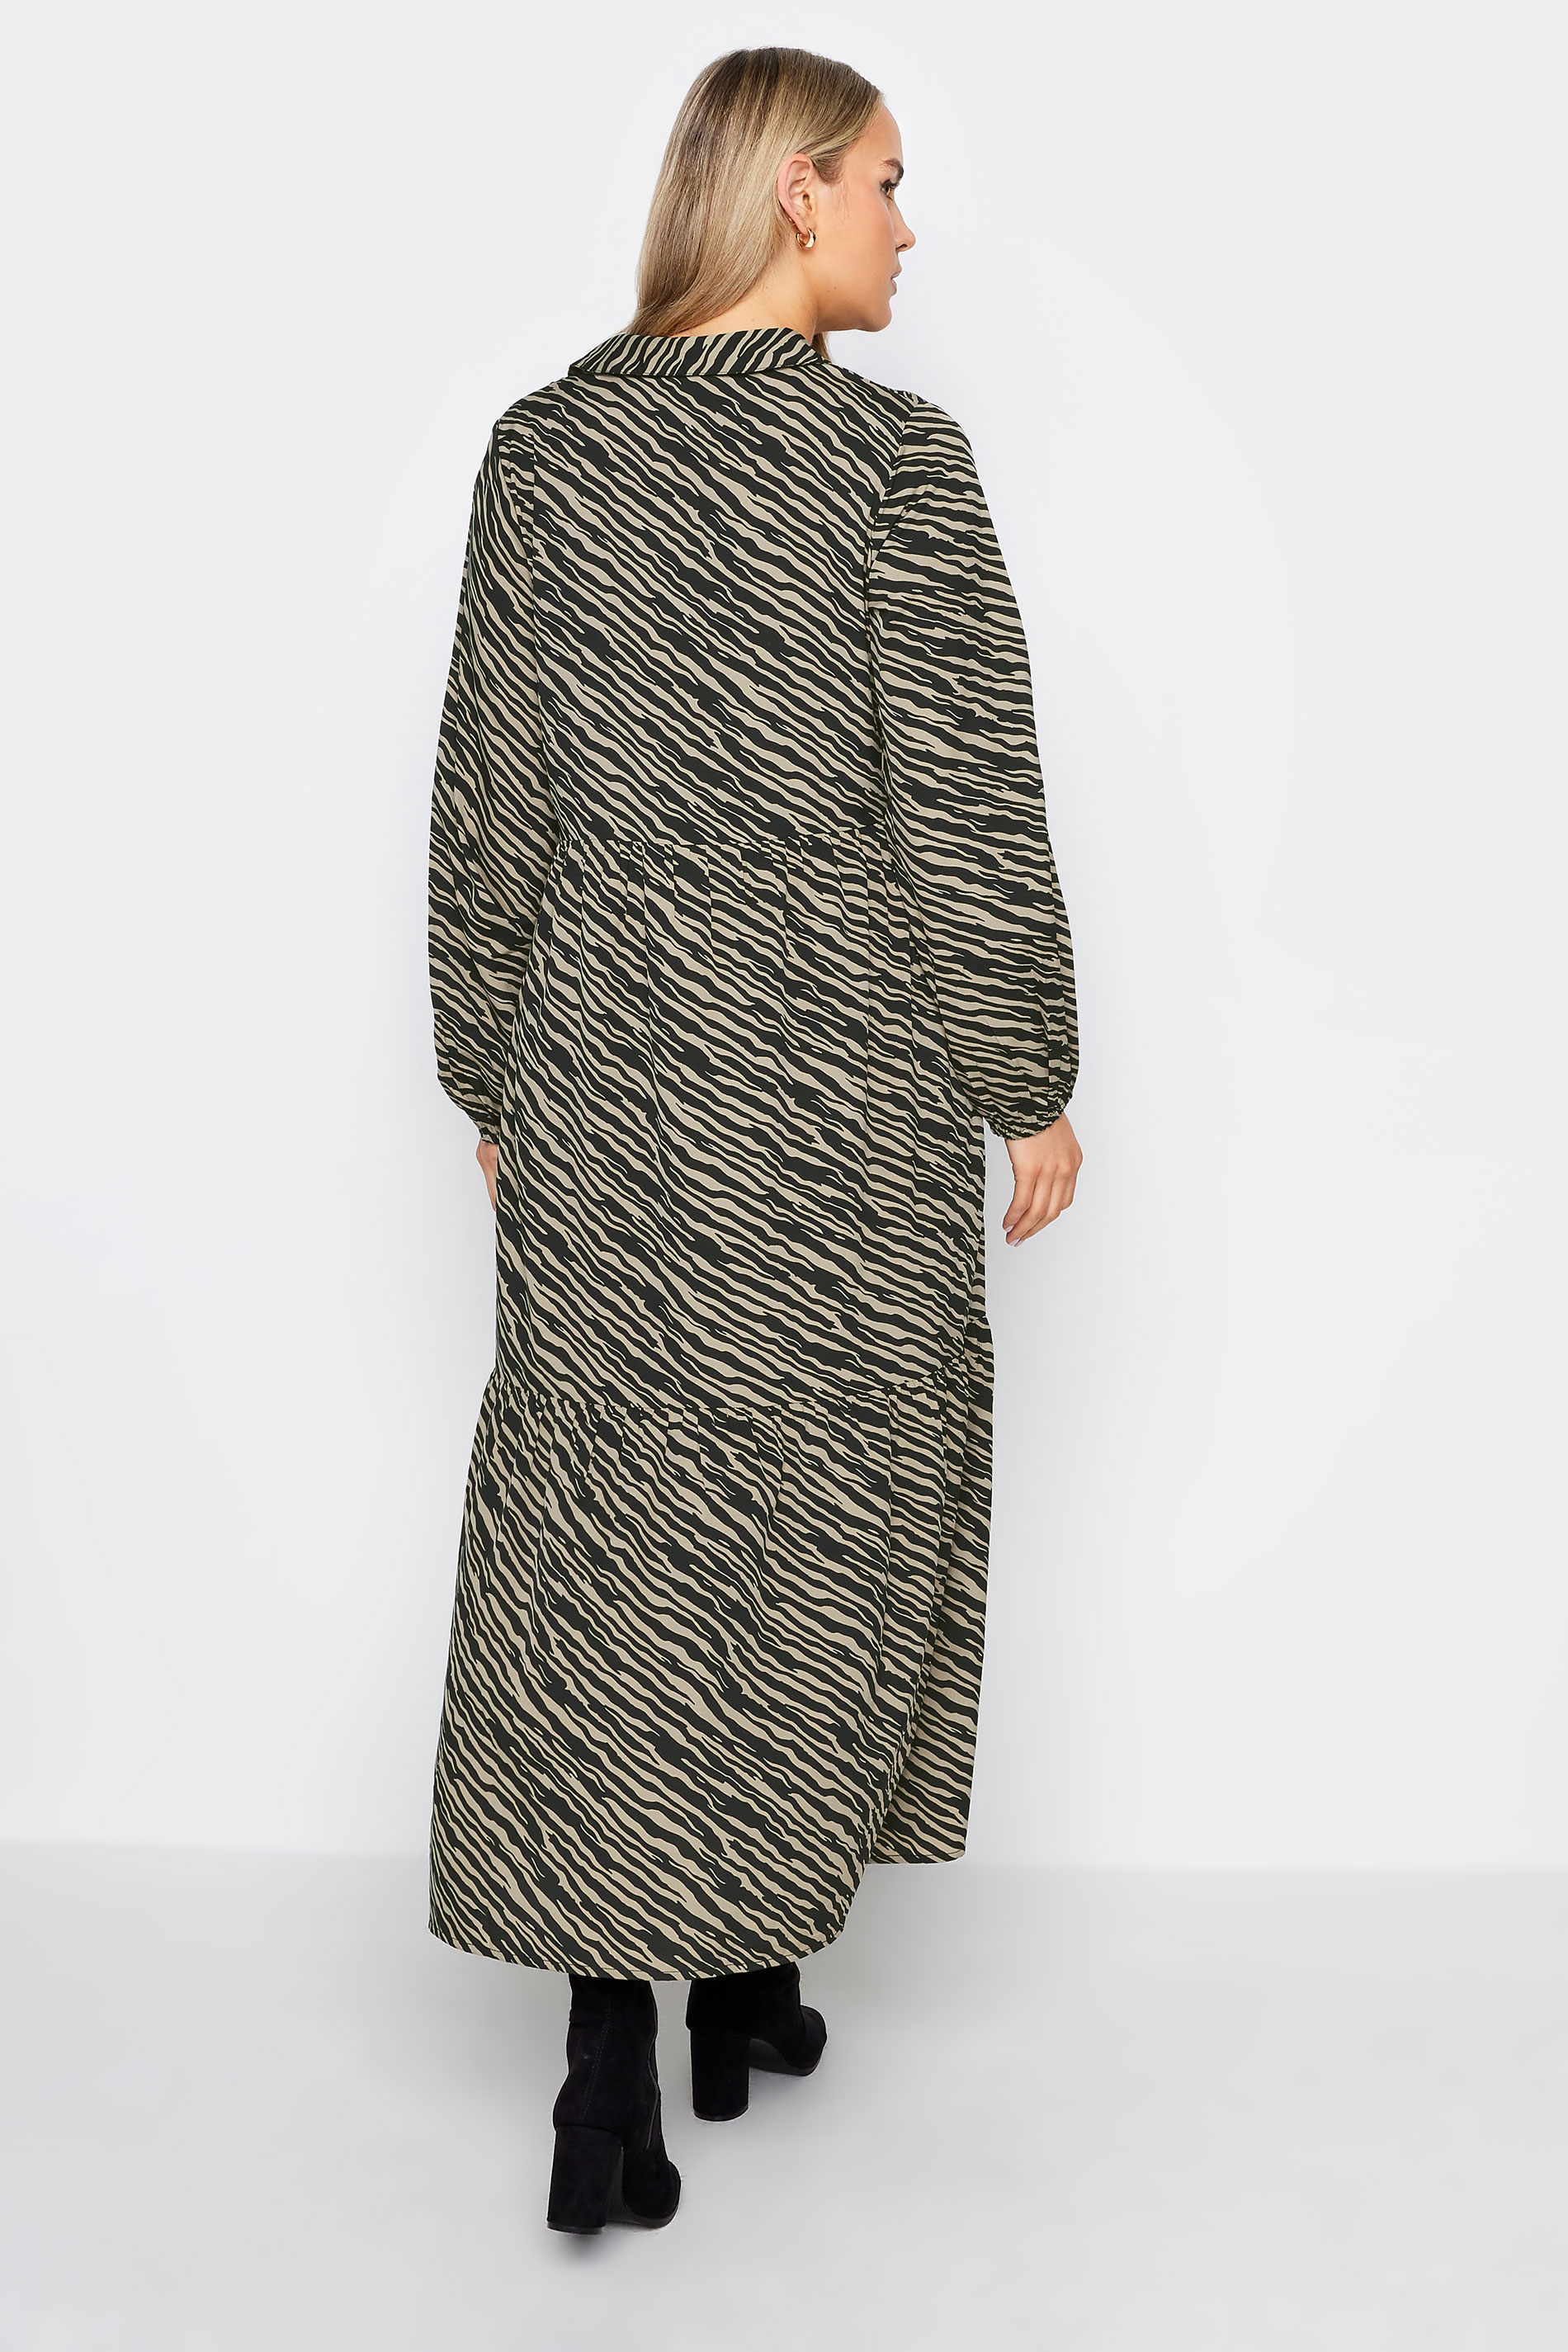 LTS Tall Black Zebra Print Tiered Maxi Dress | Long Tall Sally 3